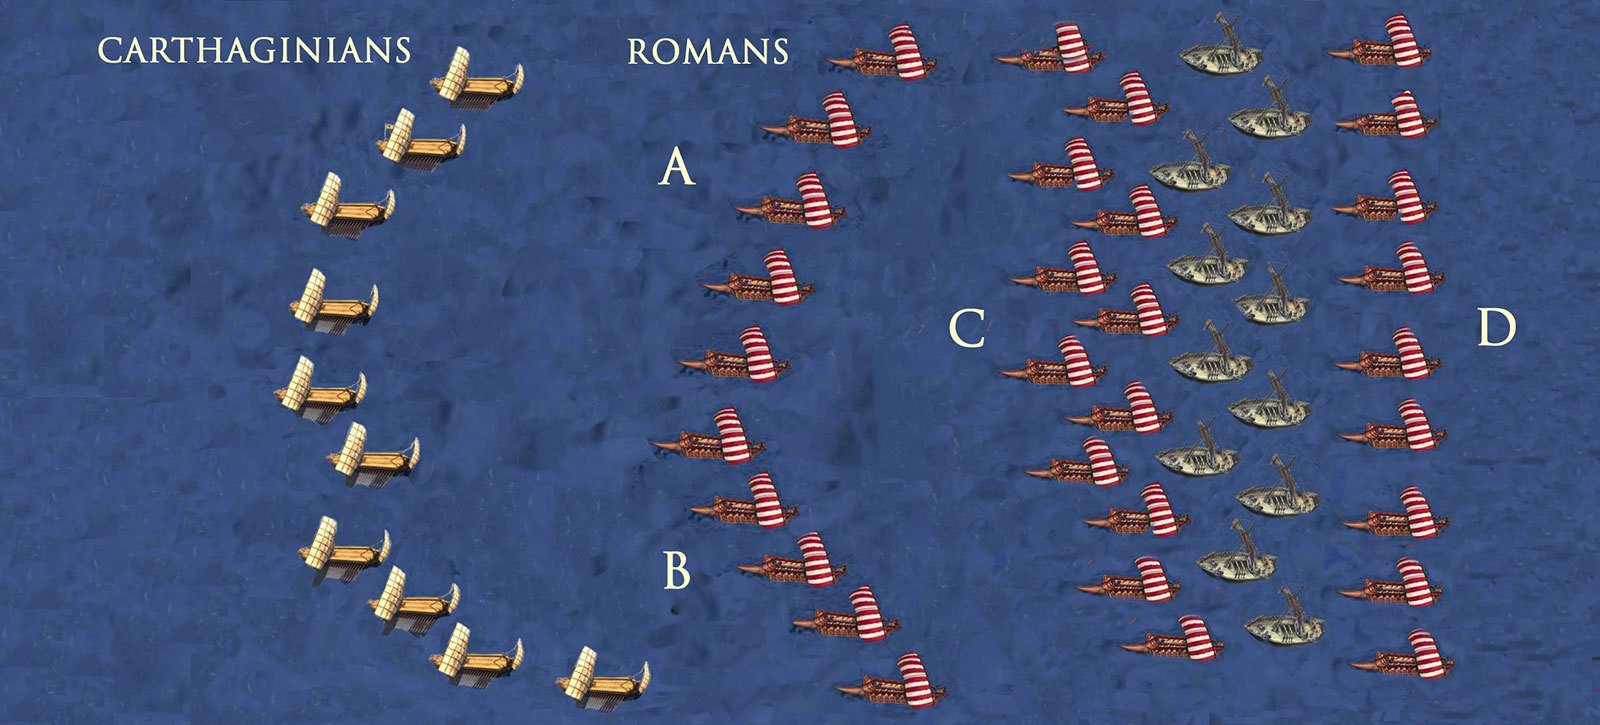 Battle of Ecnomus - Opening Phase